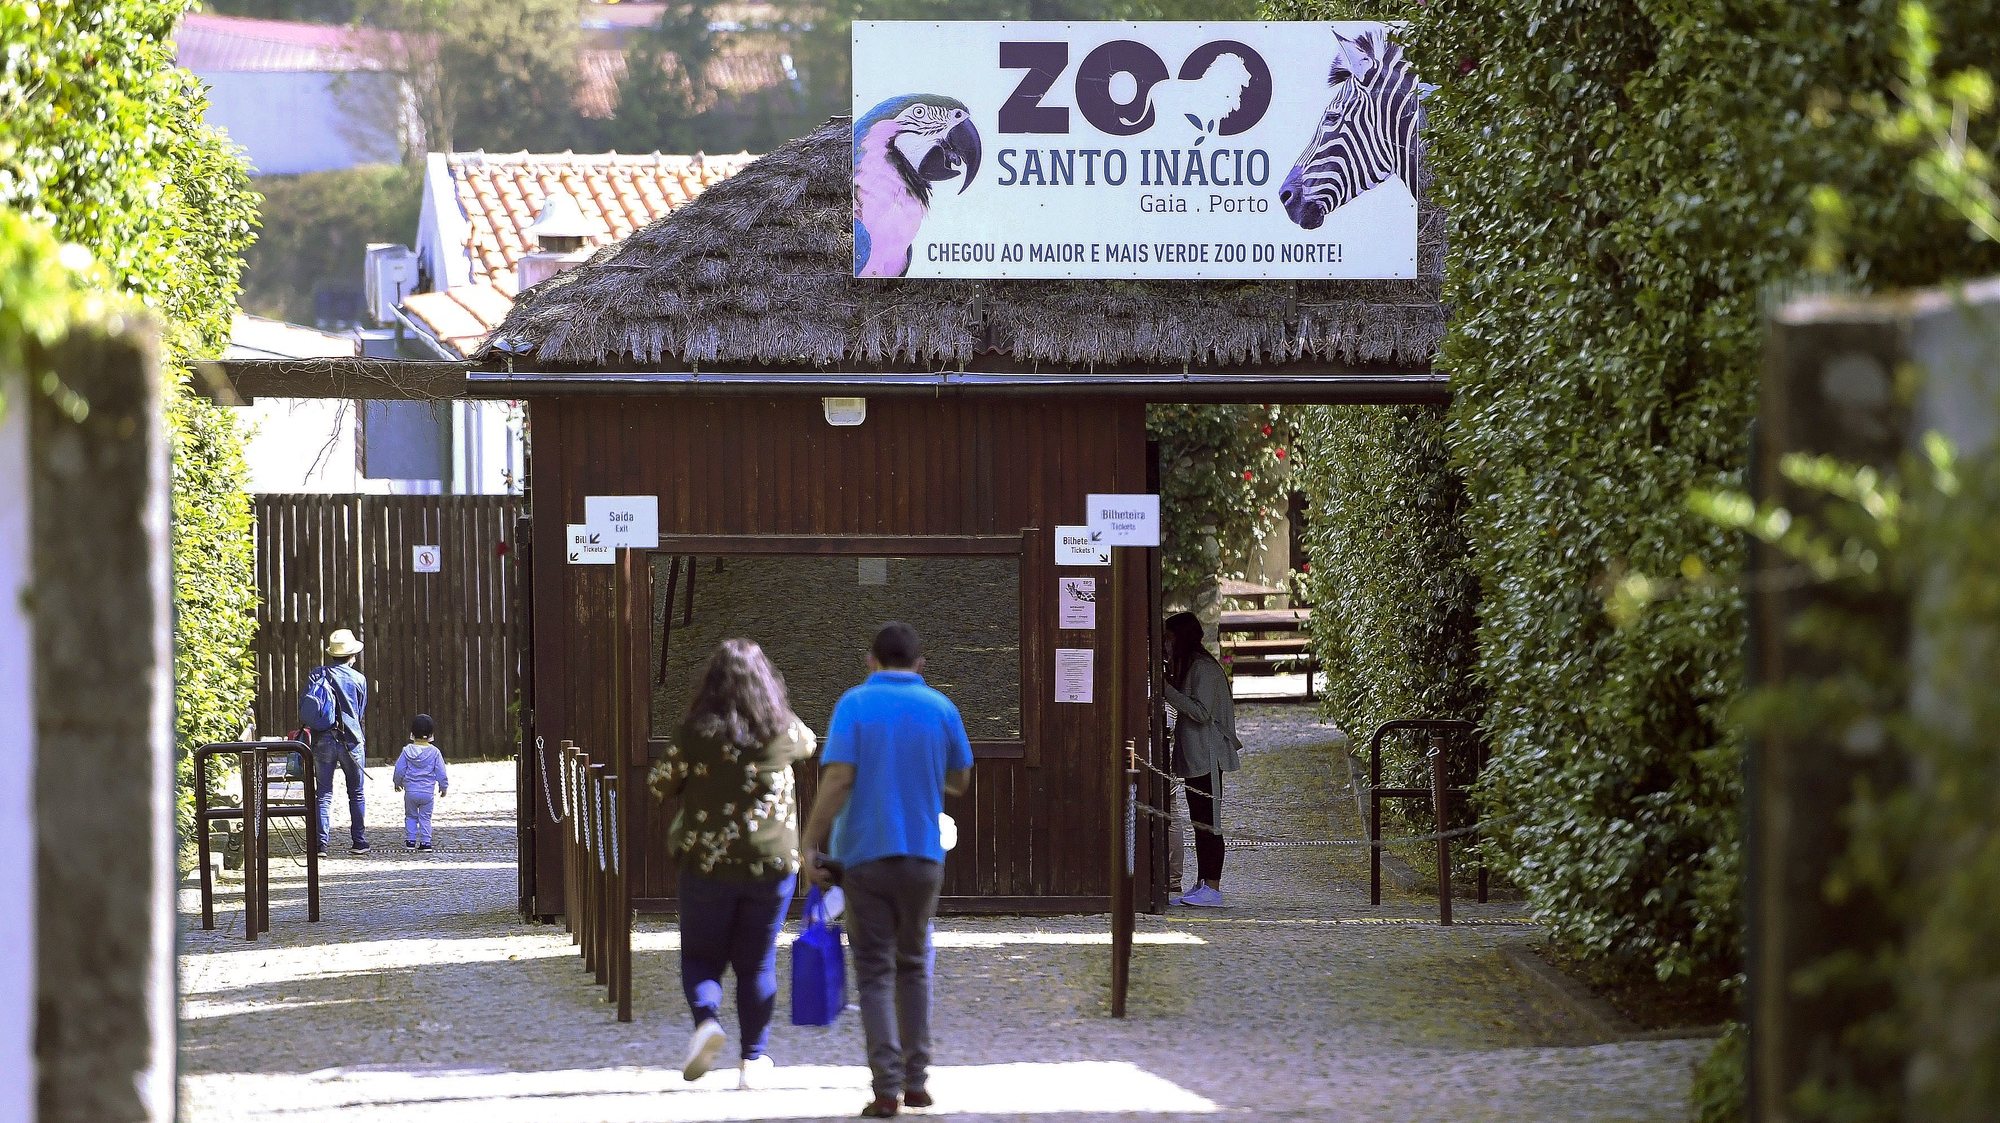 Reabertura do Zoo Santo Inácio após ter estado encerrado devido à pandemia da Covid-19, Avintes, Vila Nova de Gaia, 7 de maio de 2020. FERNANDO VELUDO/LUSA